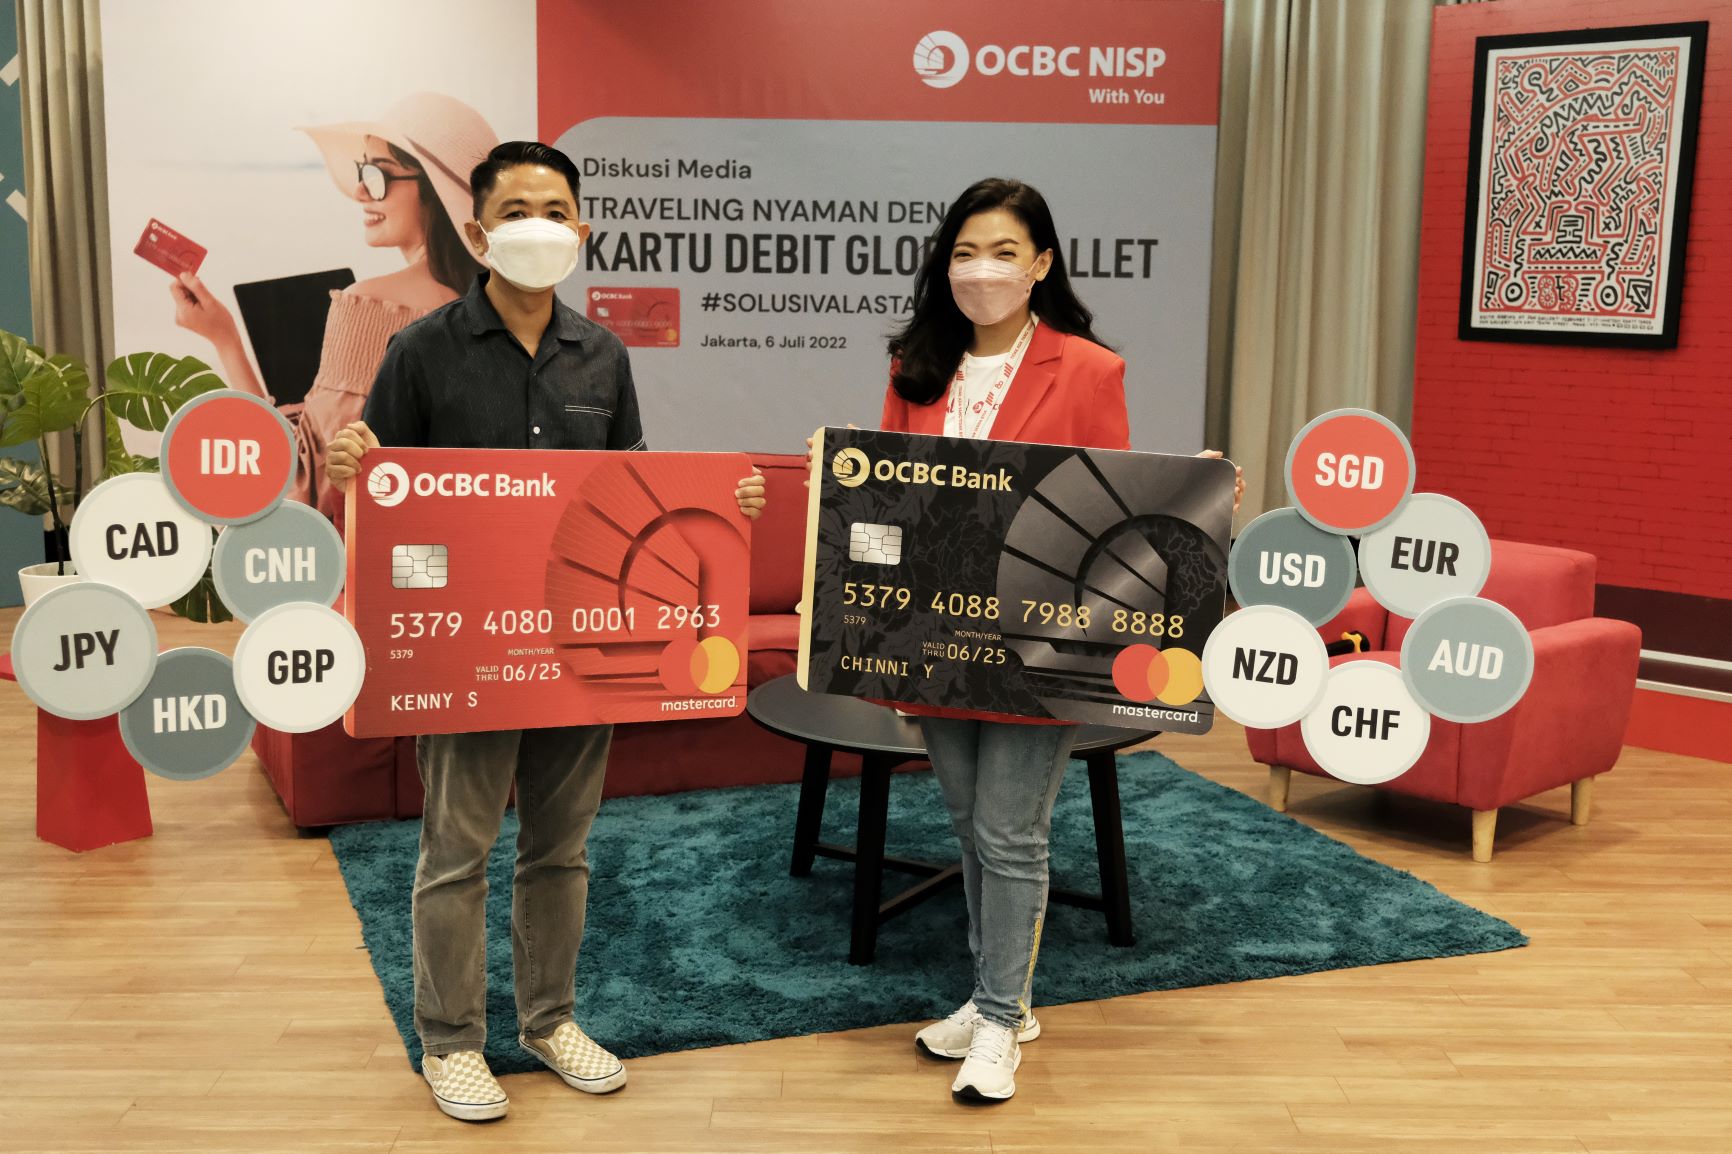 Liburan Mudah Dan Aman Dengan Kartu Debit Global Wallet OCBC NISP